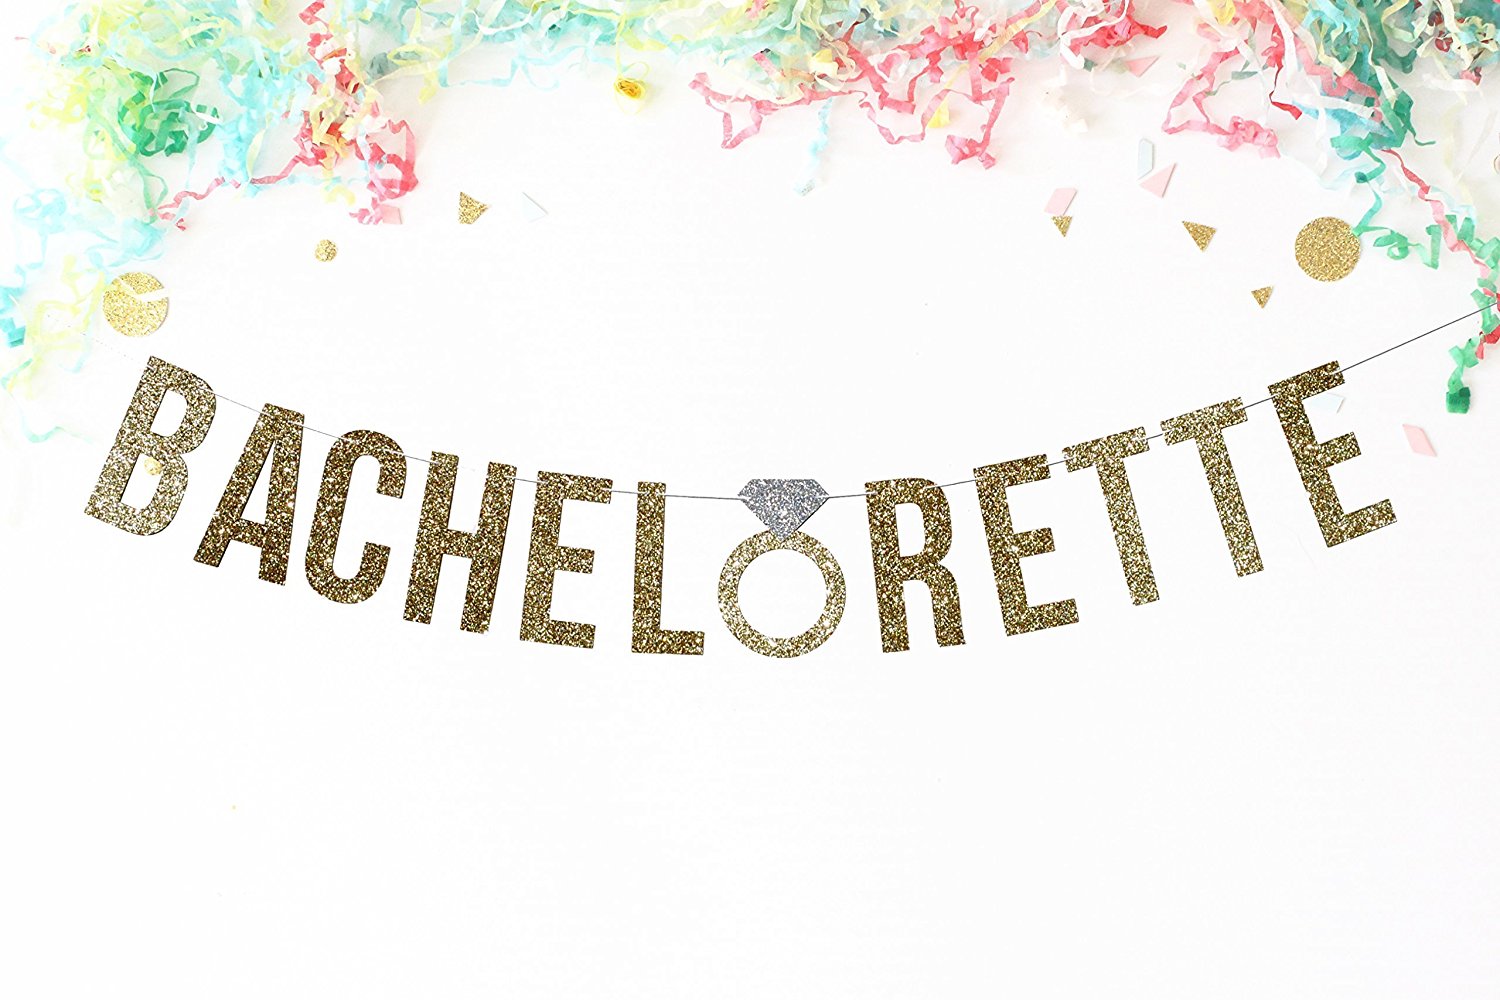 bachelorette party decorations, bachelorette party idea, bachelorette party supplies, bachelorette decorations, bachelorette supplies